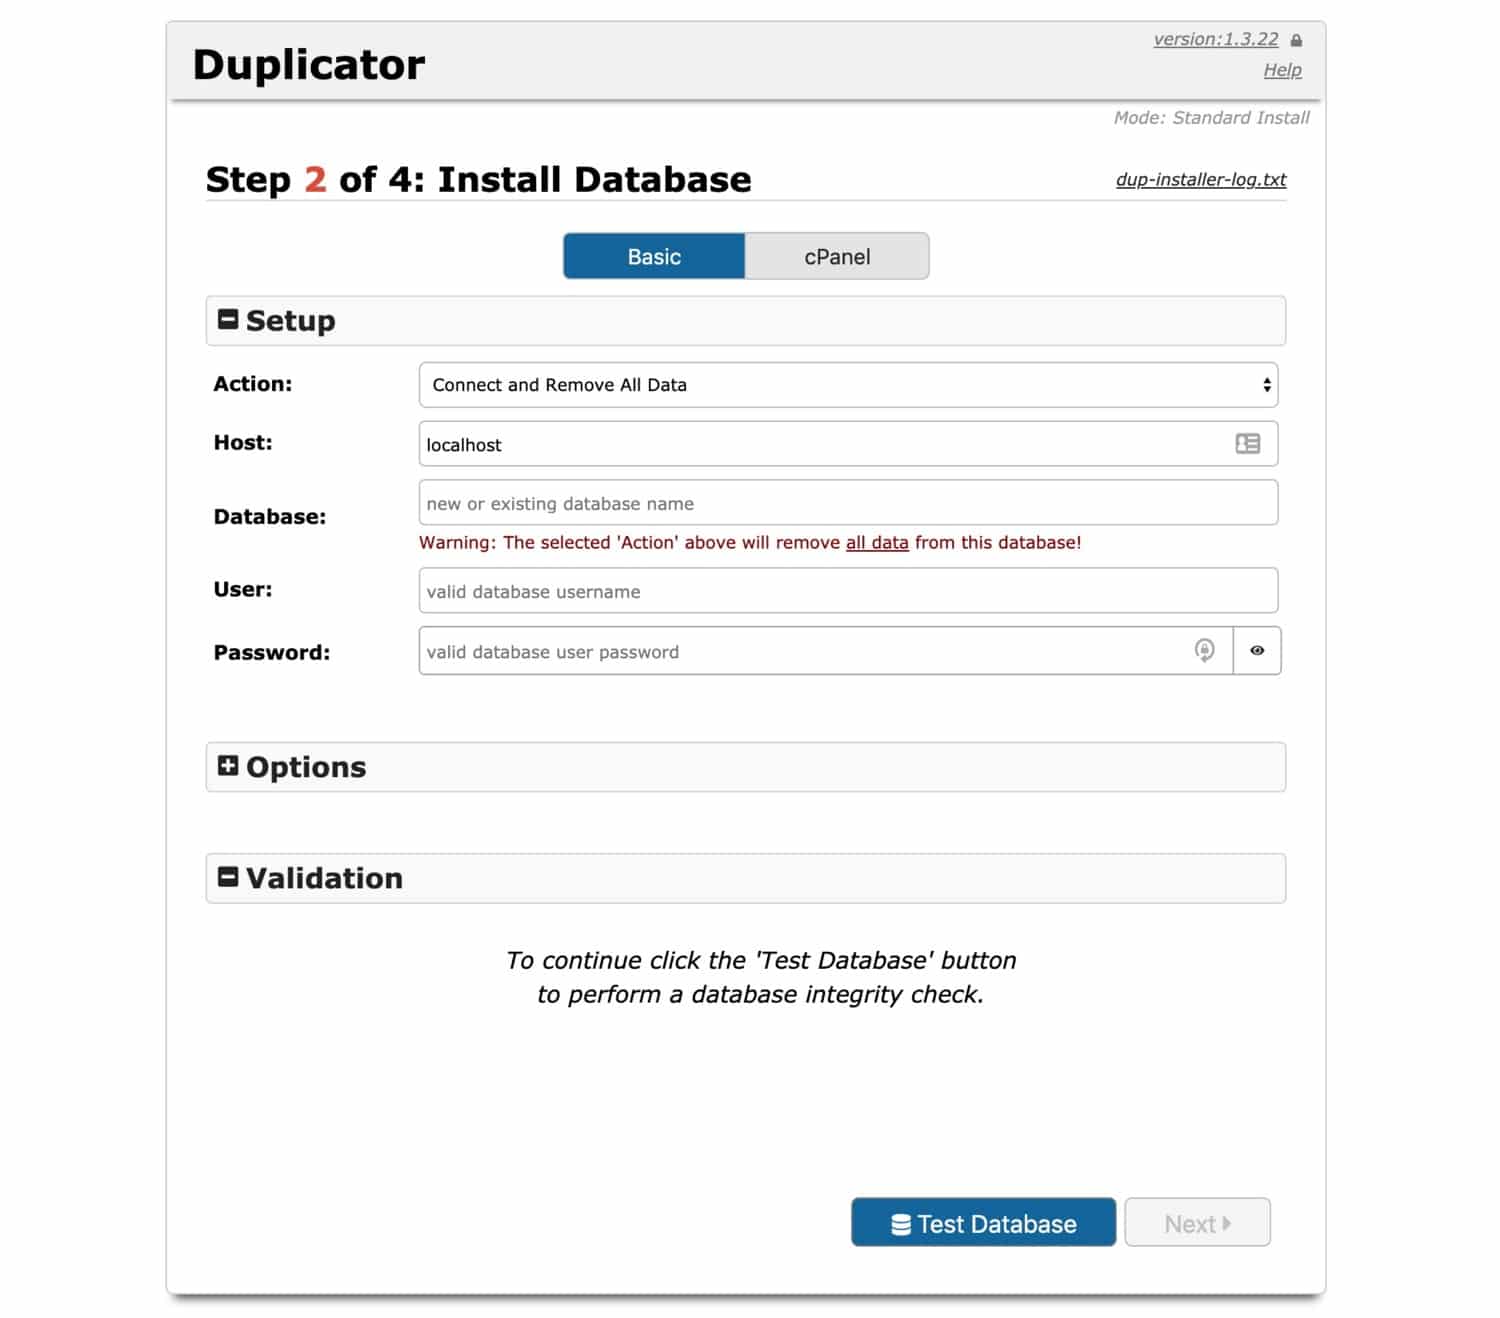 Duplicatorでのデータベースの作成